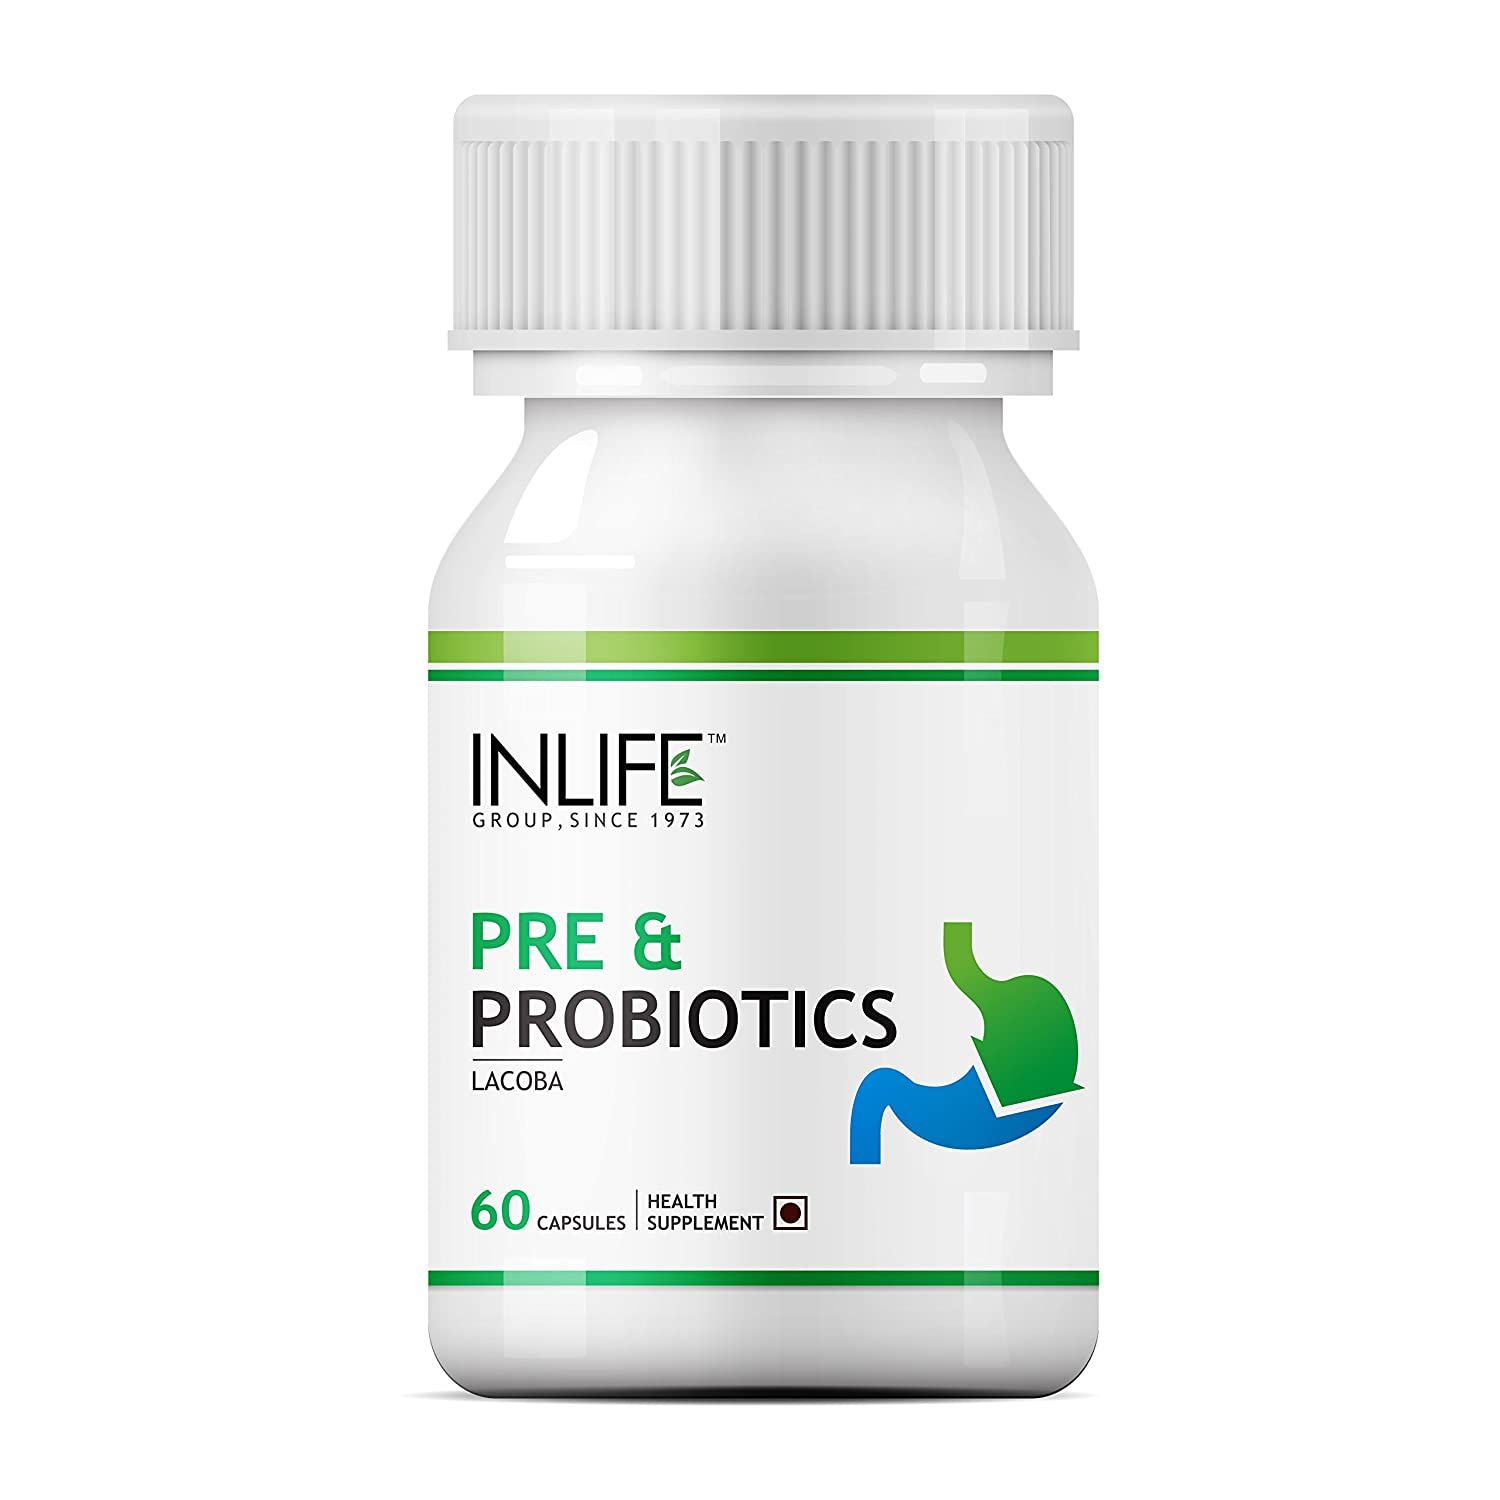 Inlife Pre & Probiotics Image